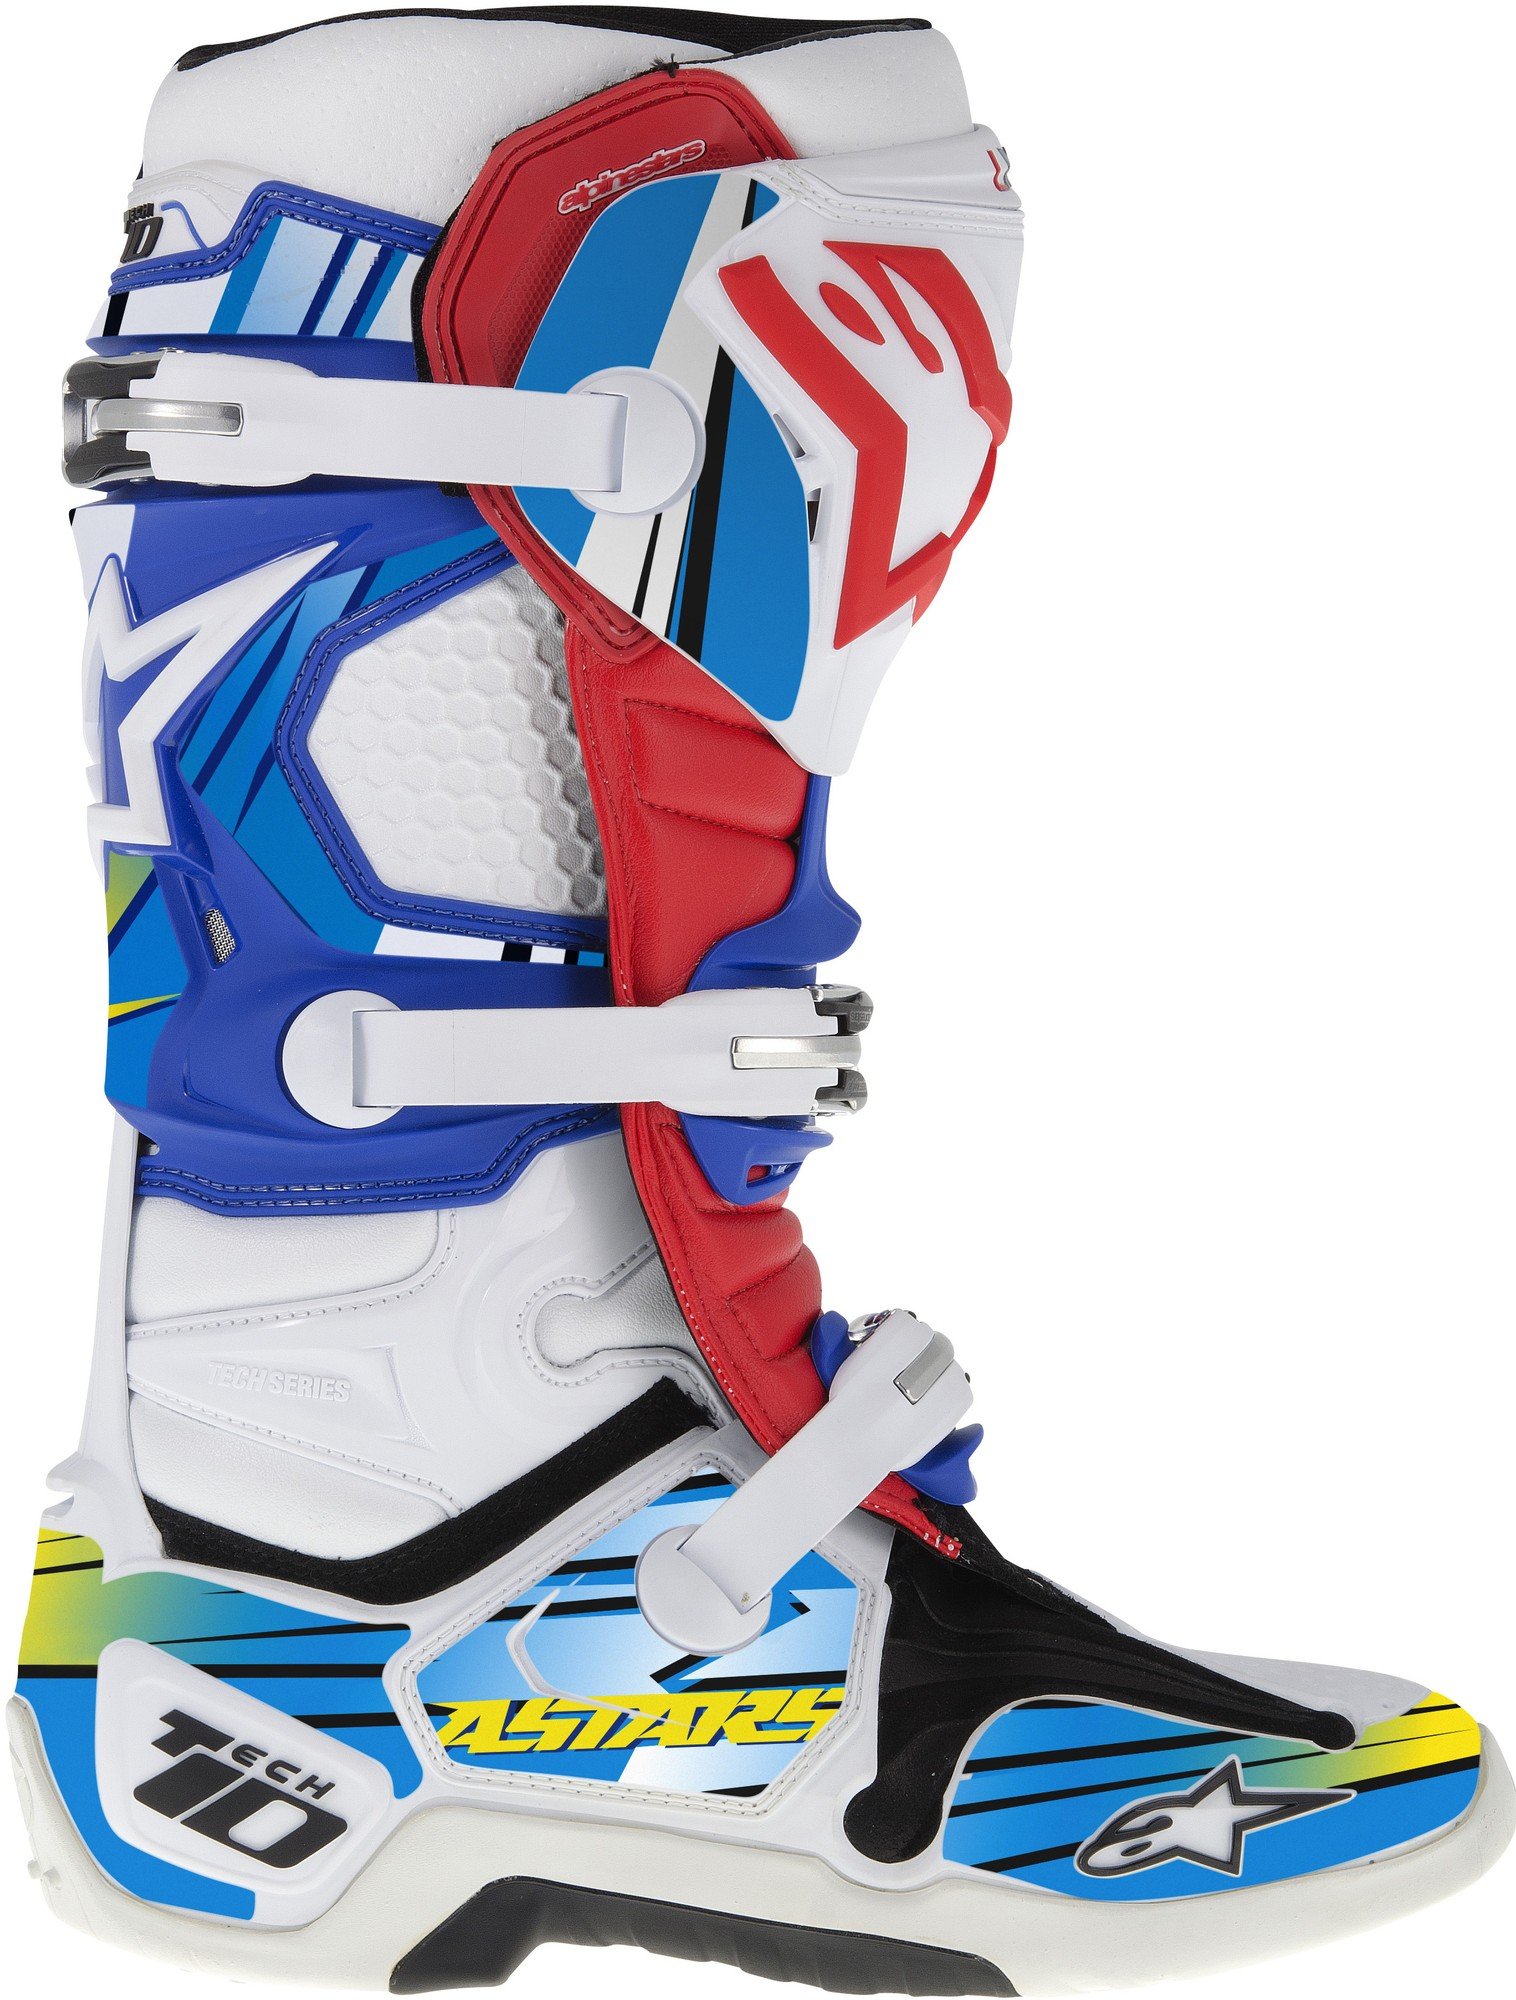 Obrázek produktu sada polepů pro boty TECH 10 model 2014 až 2018, ALPINESTARS (modrá/světle modrá/žlutá)